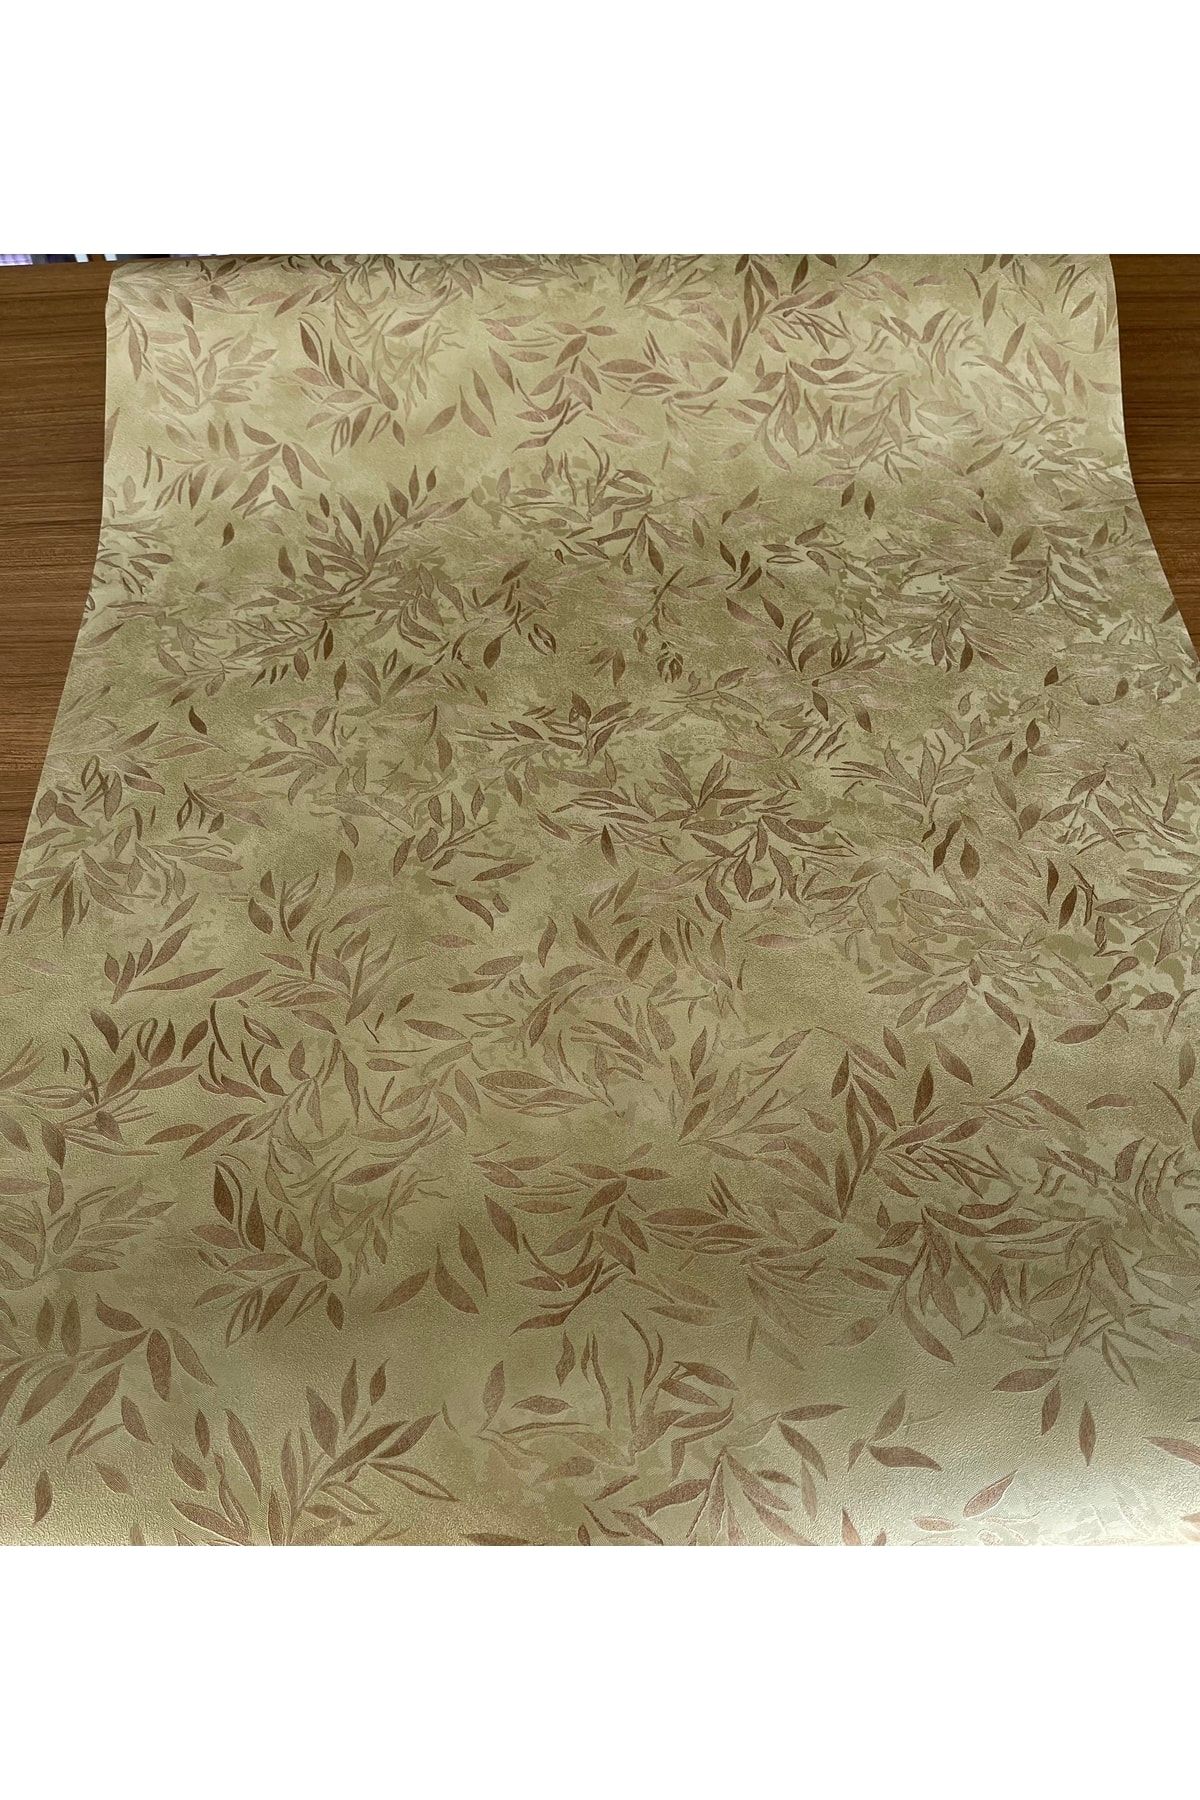 BAŞYAPI DİZAYN Kahverengi Yaprak Desenli Ithal Duvar Kağıdı (7m²)